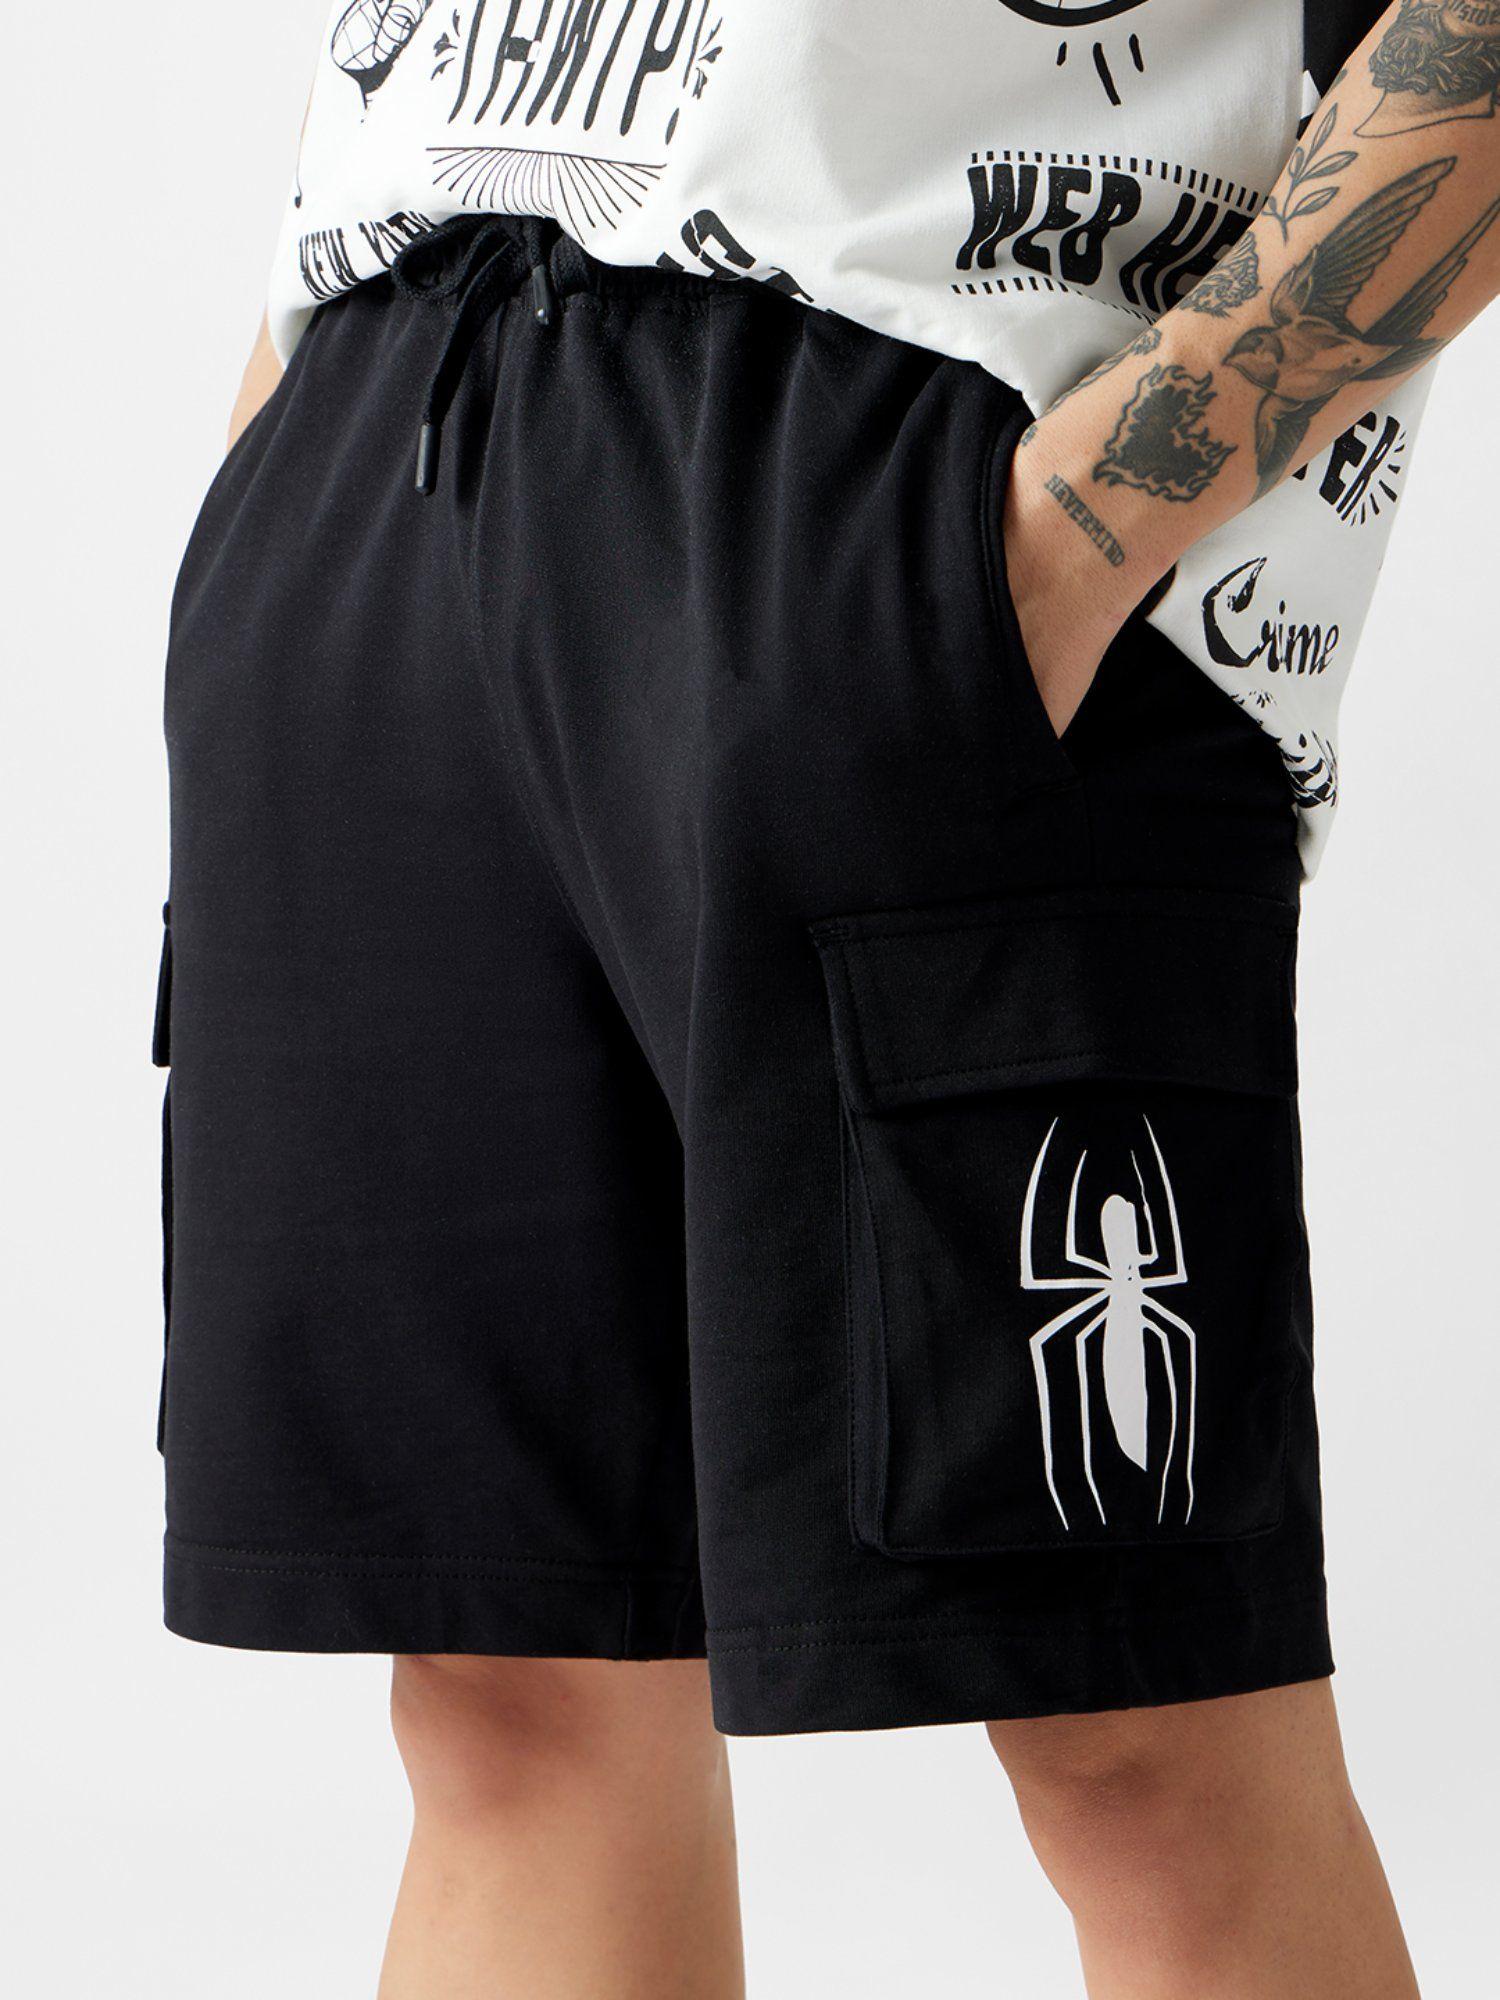 official-spider-man-crime-fighter-men-bermuda-shorts